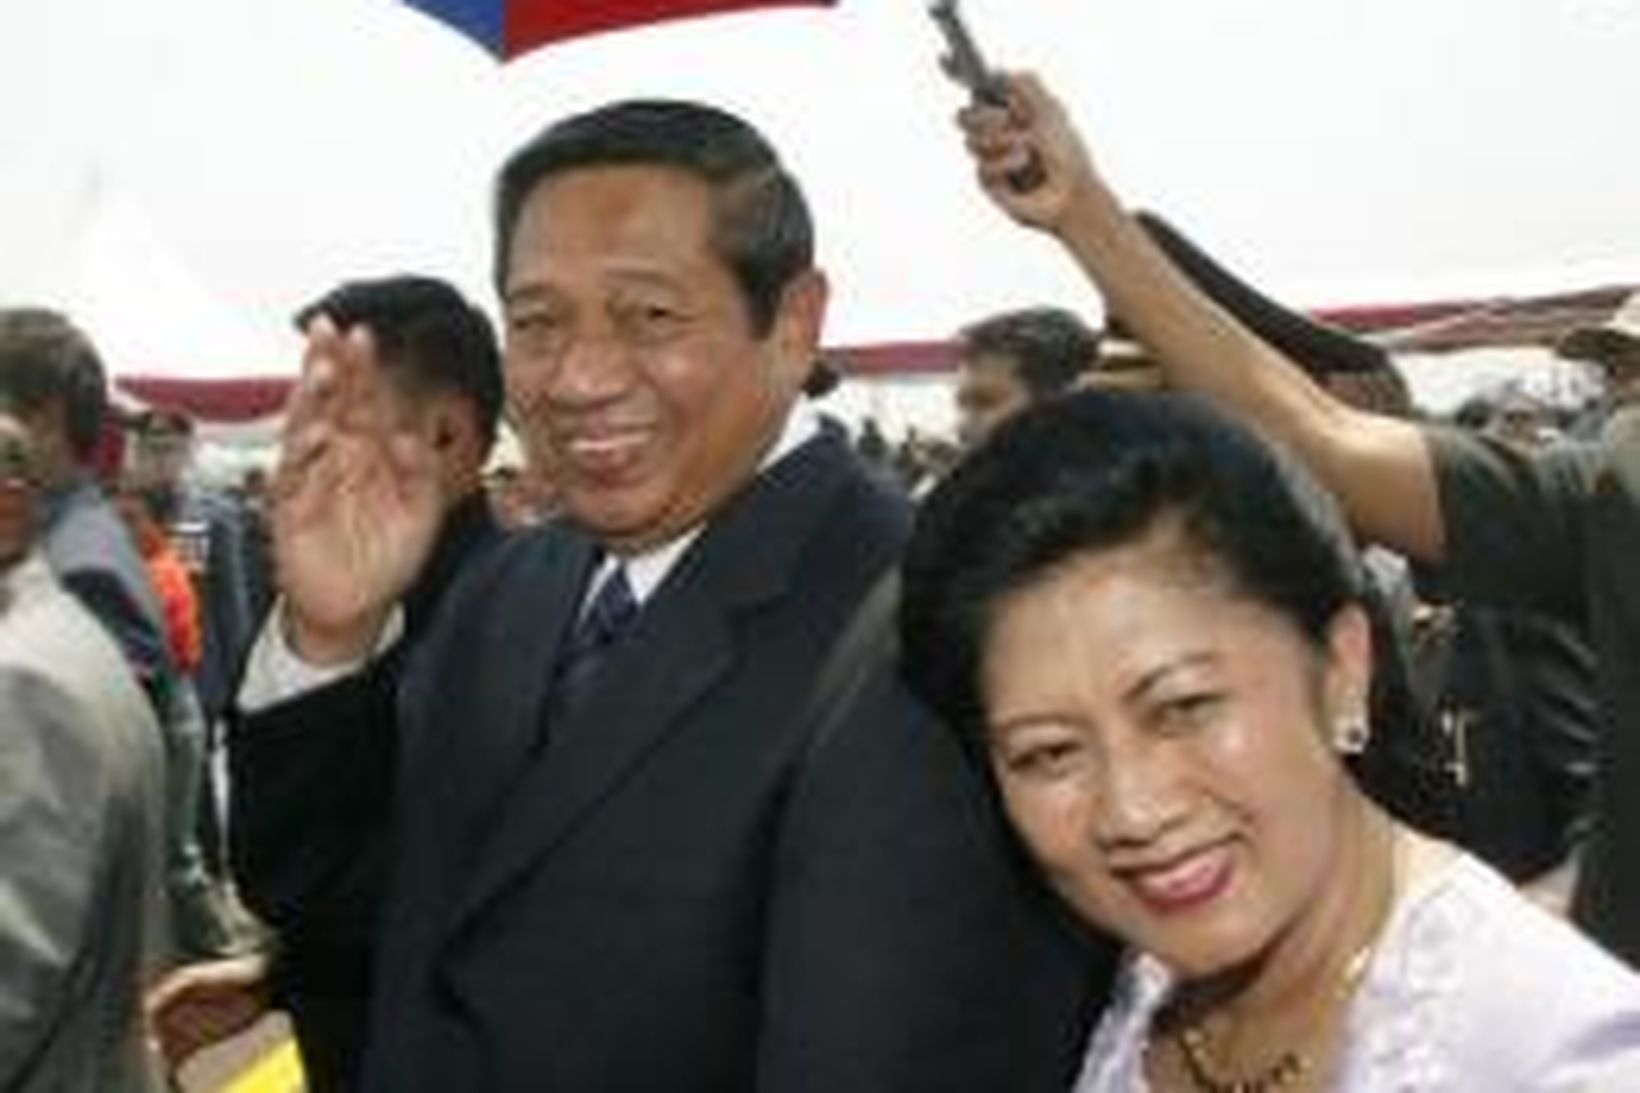 Susilo Bambang Yudhoyono, forseti Indónesíu, með konu sinni, Kristiani Herawati.